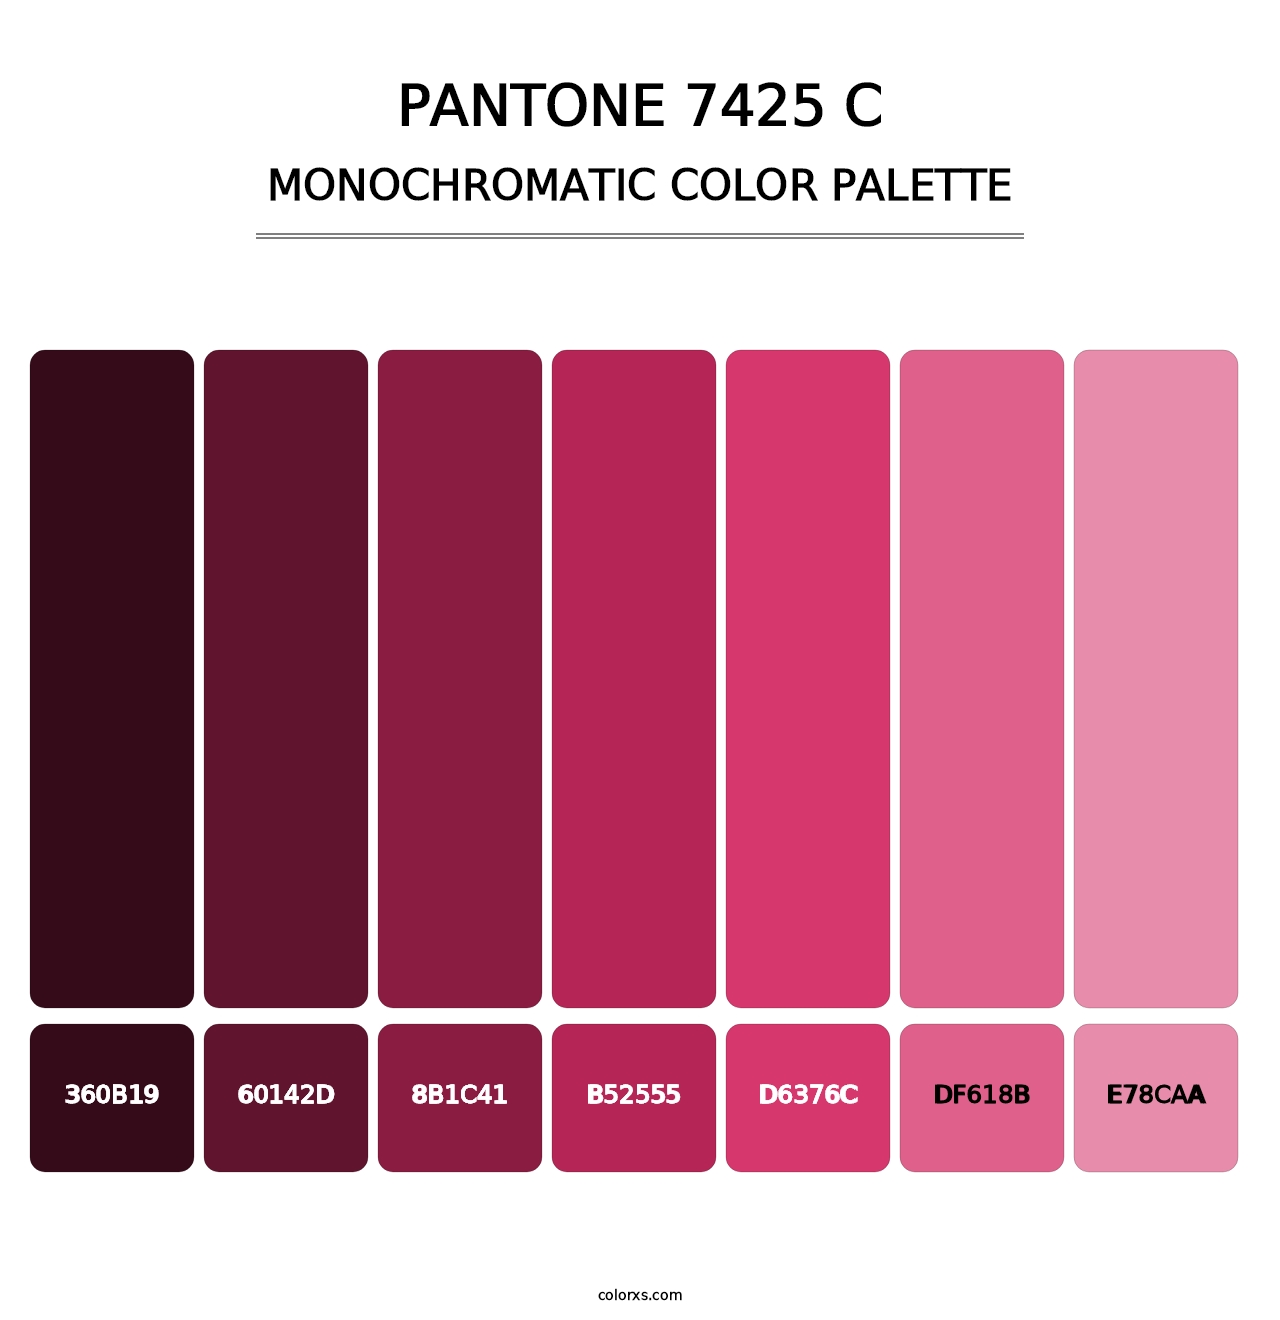 PANTONE 7425 C - Monochromatic Color Palette